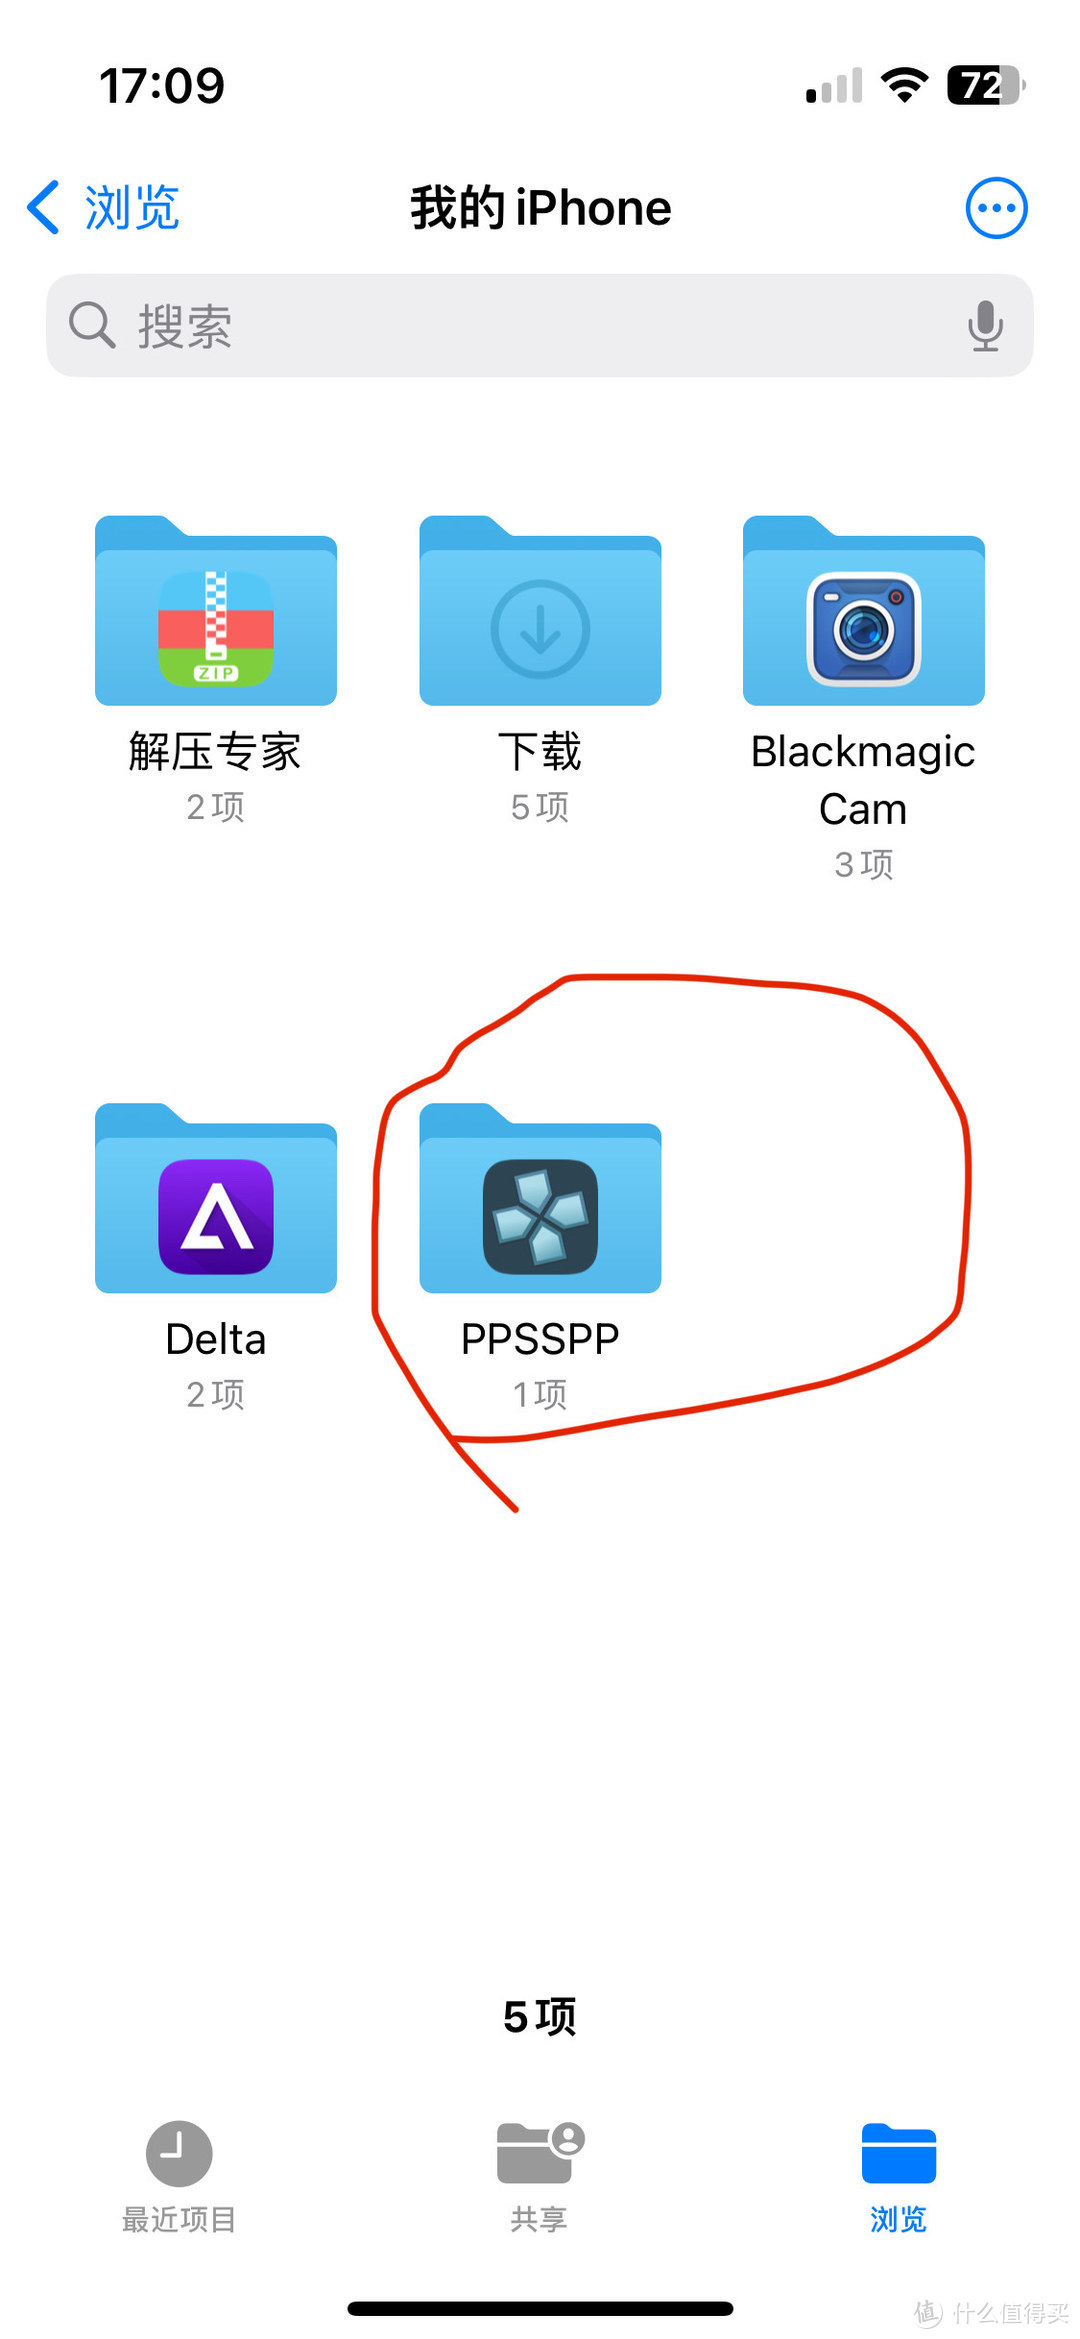 苹果最强模拟器PPSSPP只用一部手机带你玩转PPS PP。（全面图文教程）